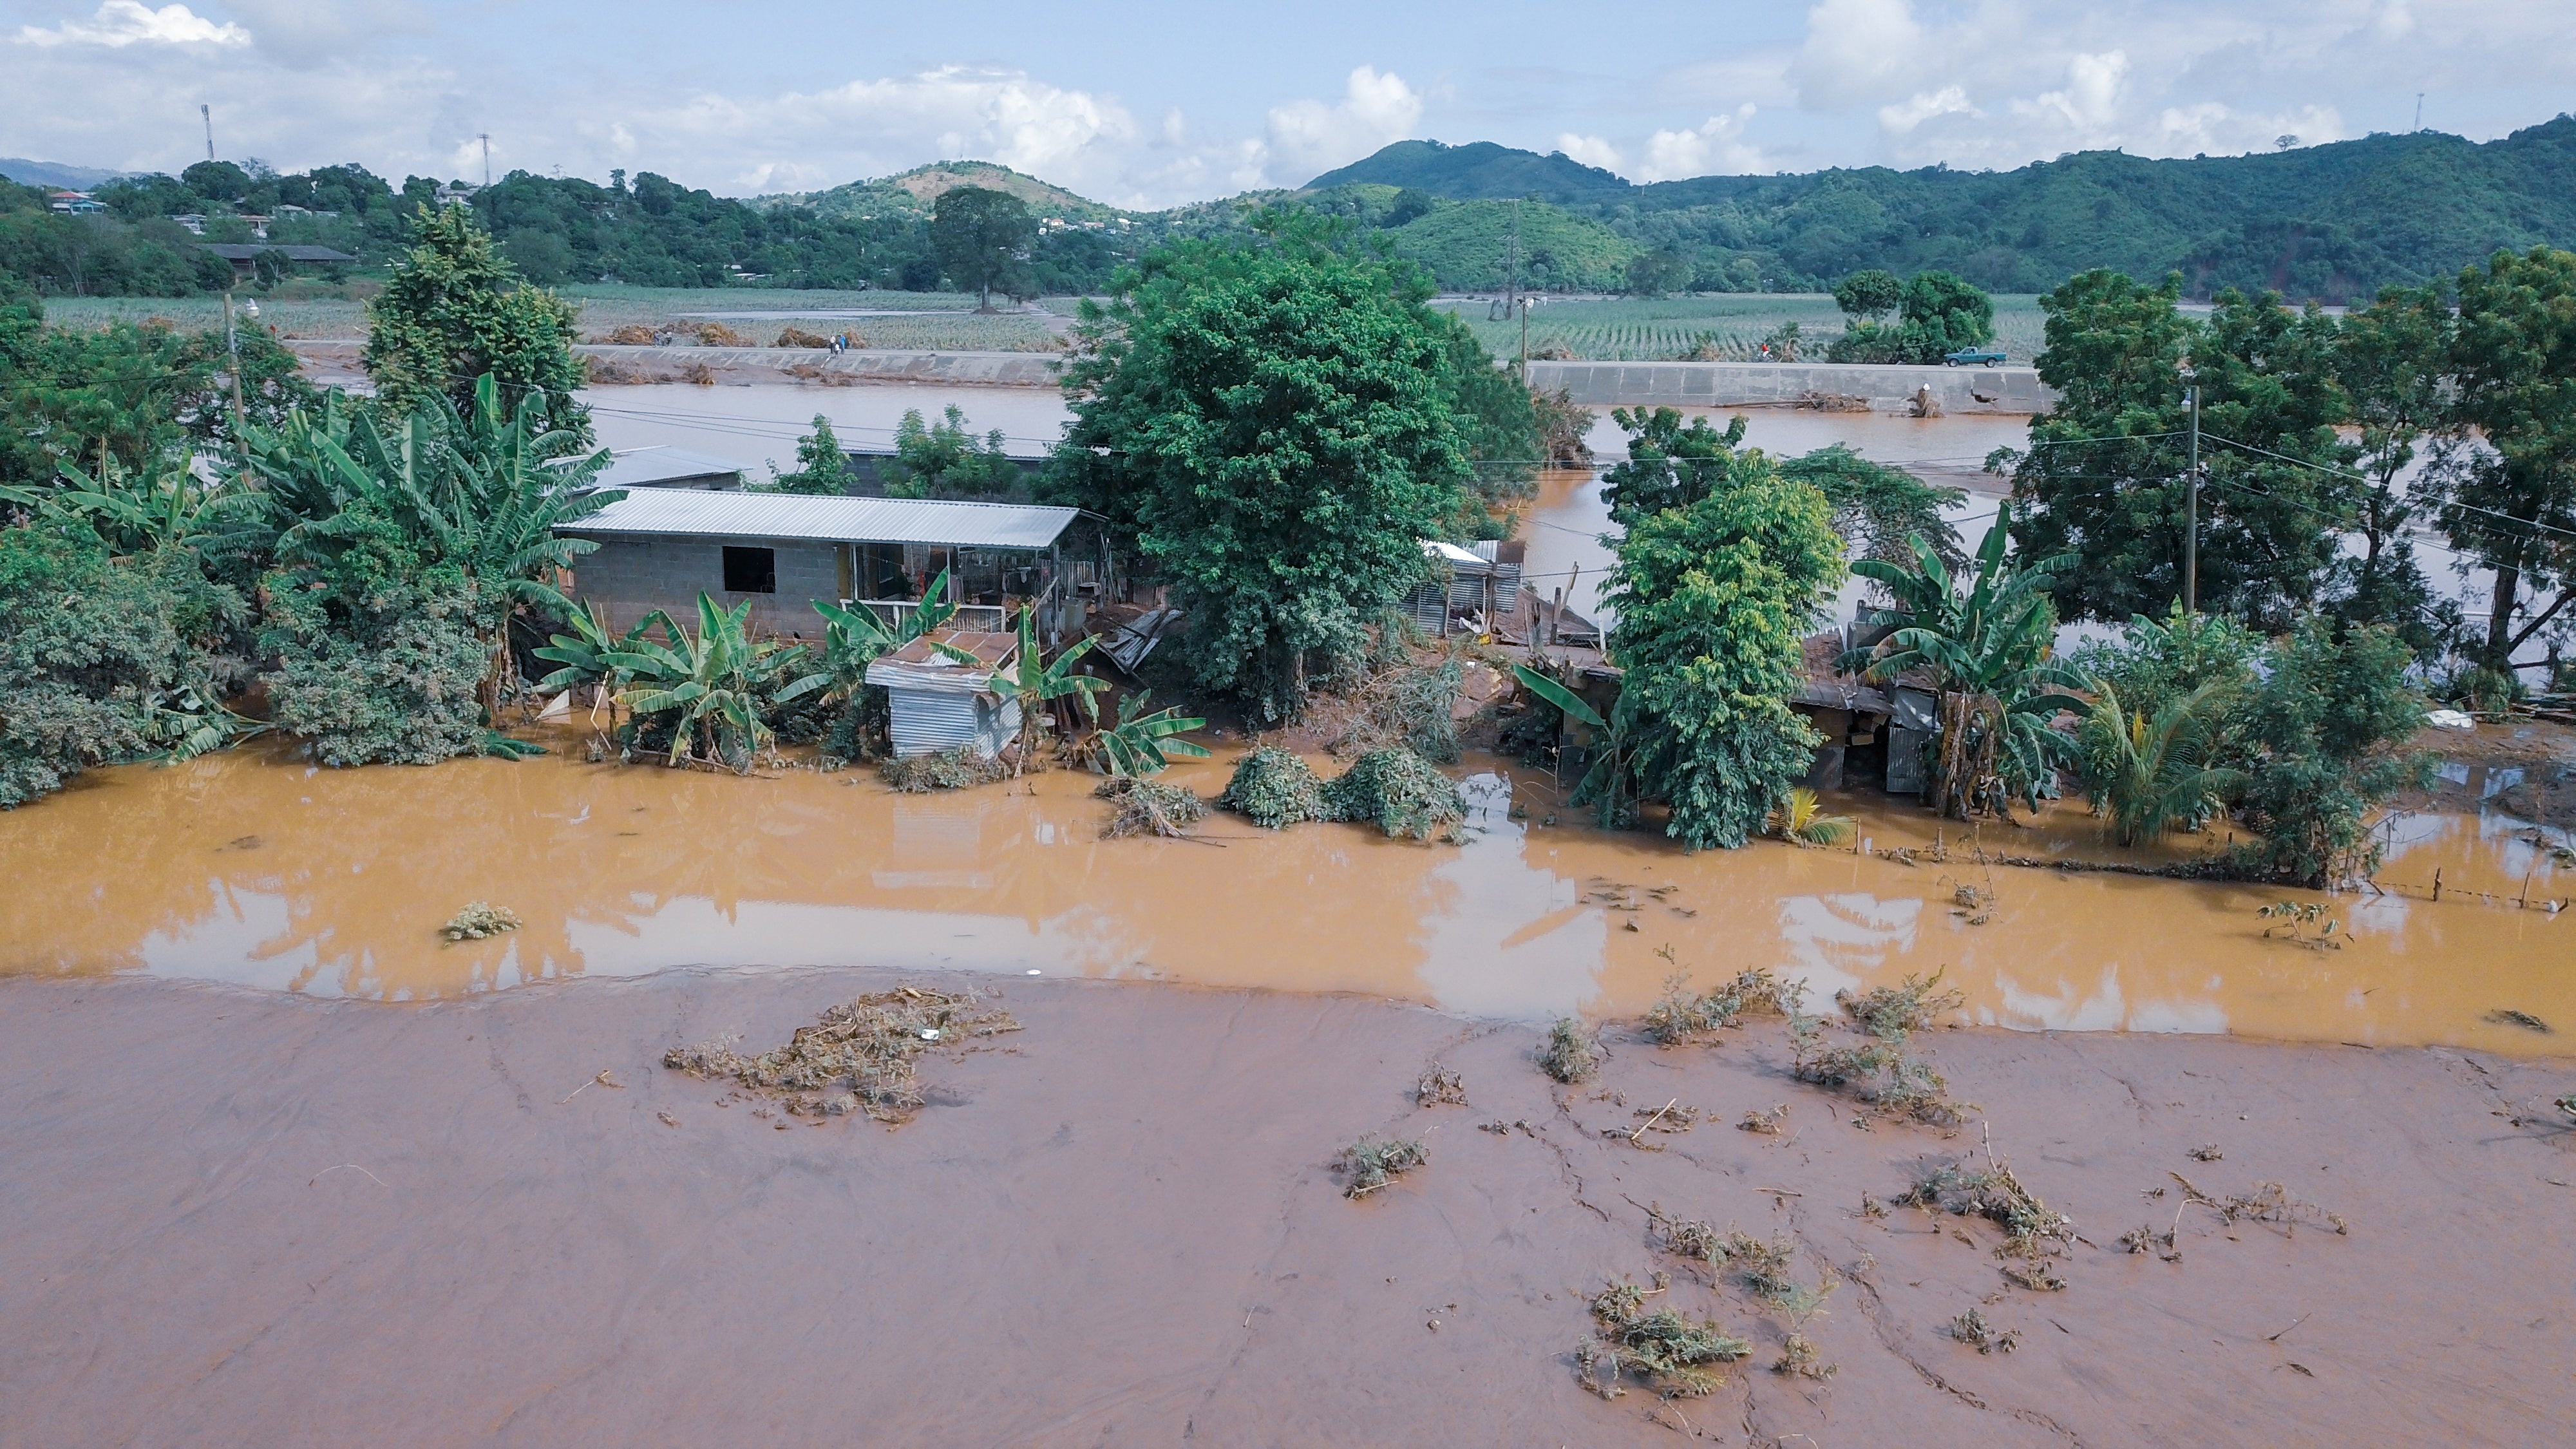 Floods broke river banks and destroyed homes